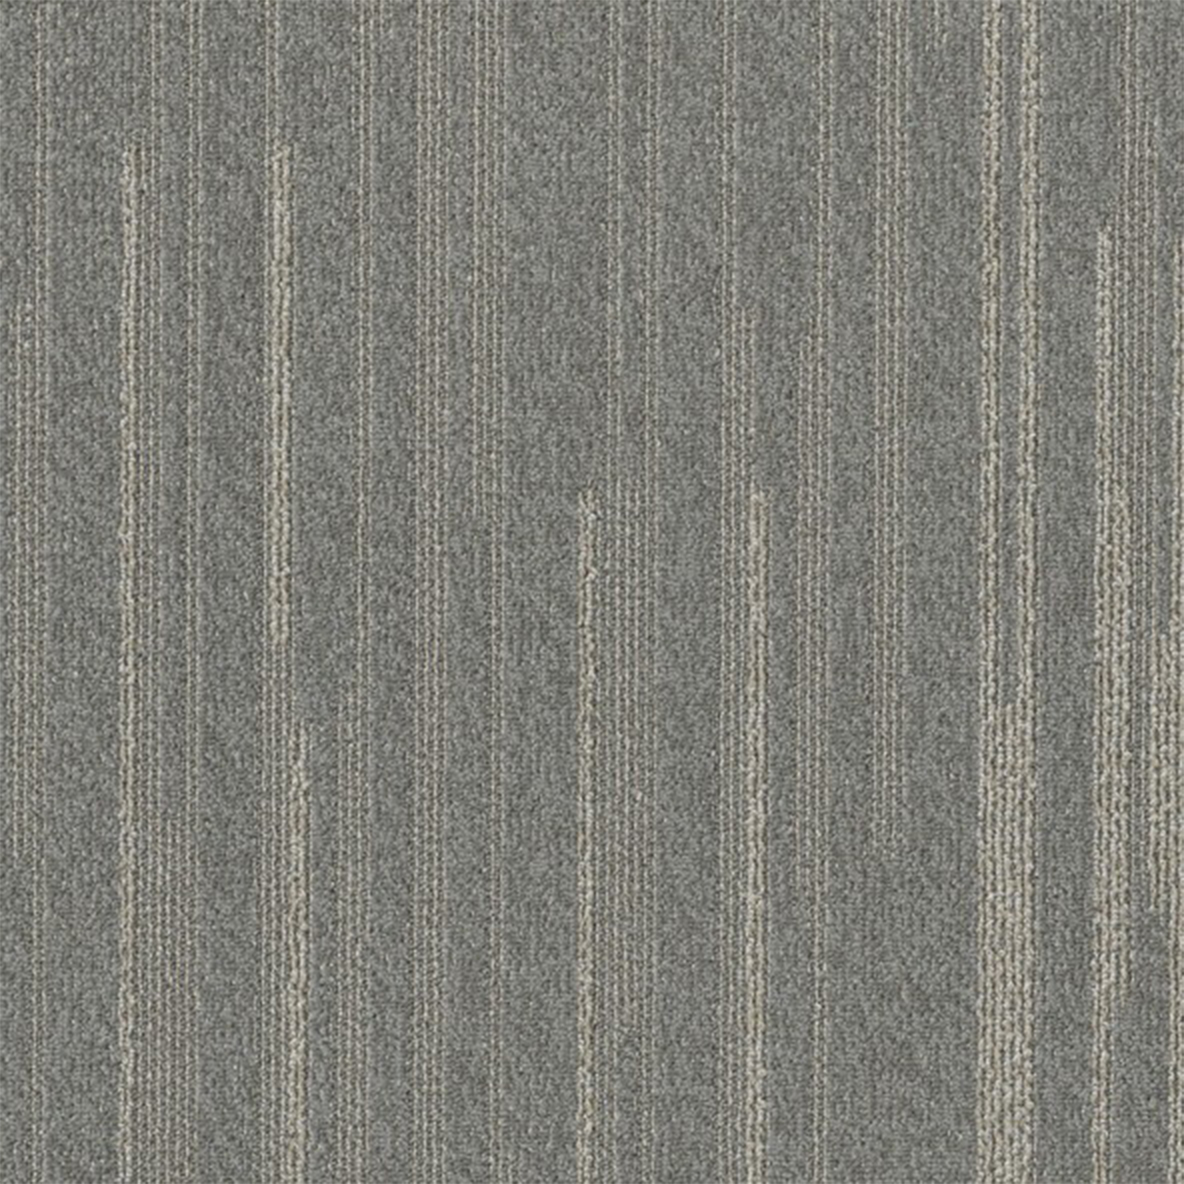 Stone color close up Quicken Commercial Carpet Tile .42 Inch x 50x50 cm per Tile